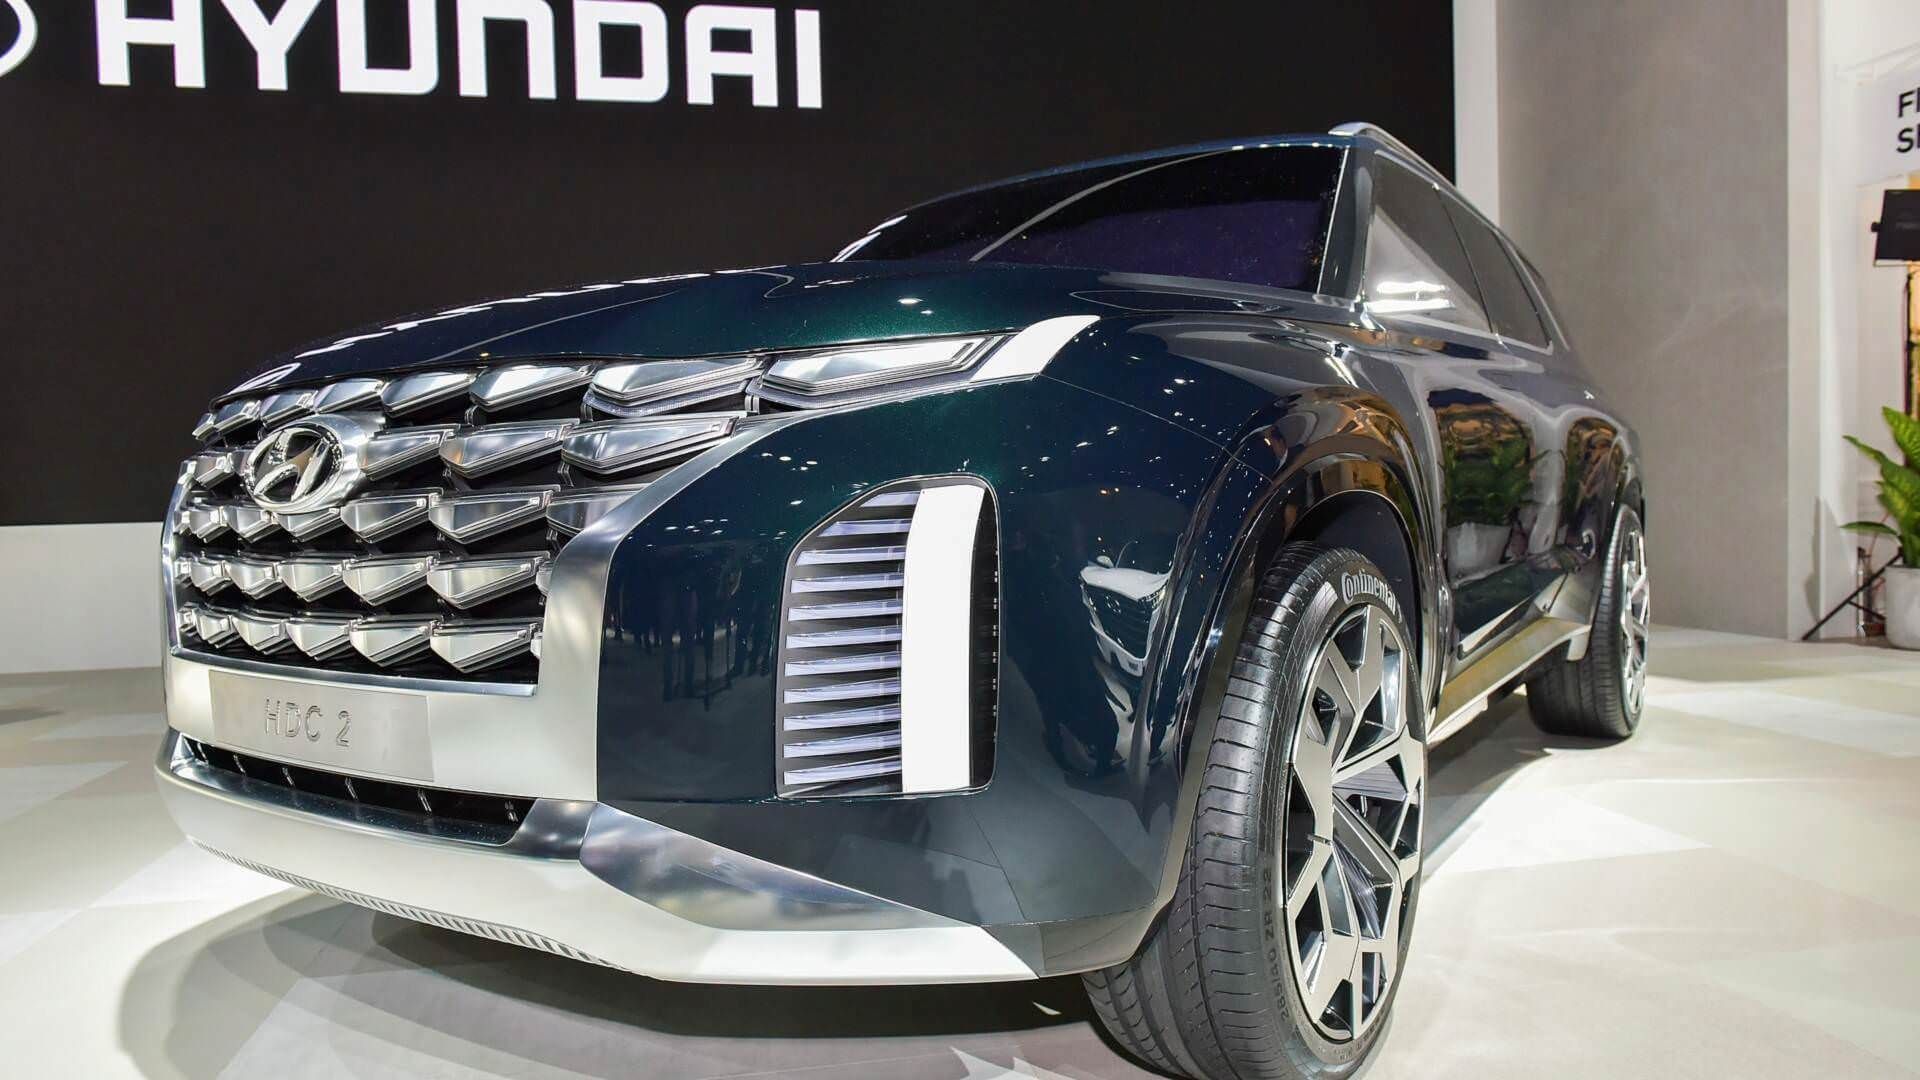 Hyundai Grandmaster Concept / خودروی مفهومی هیوندای گرندمستر